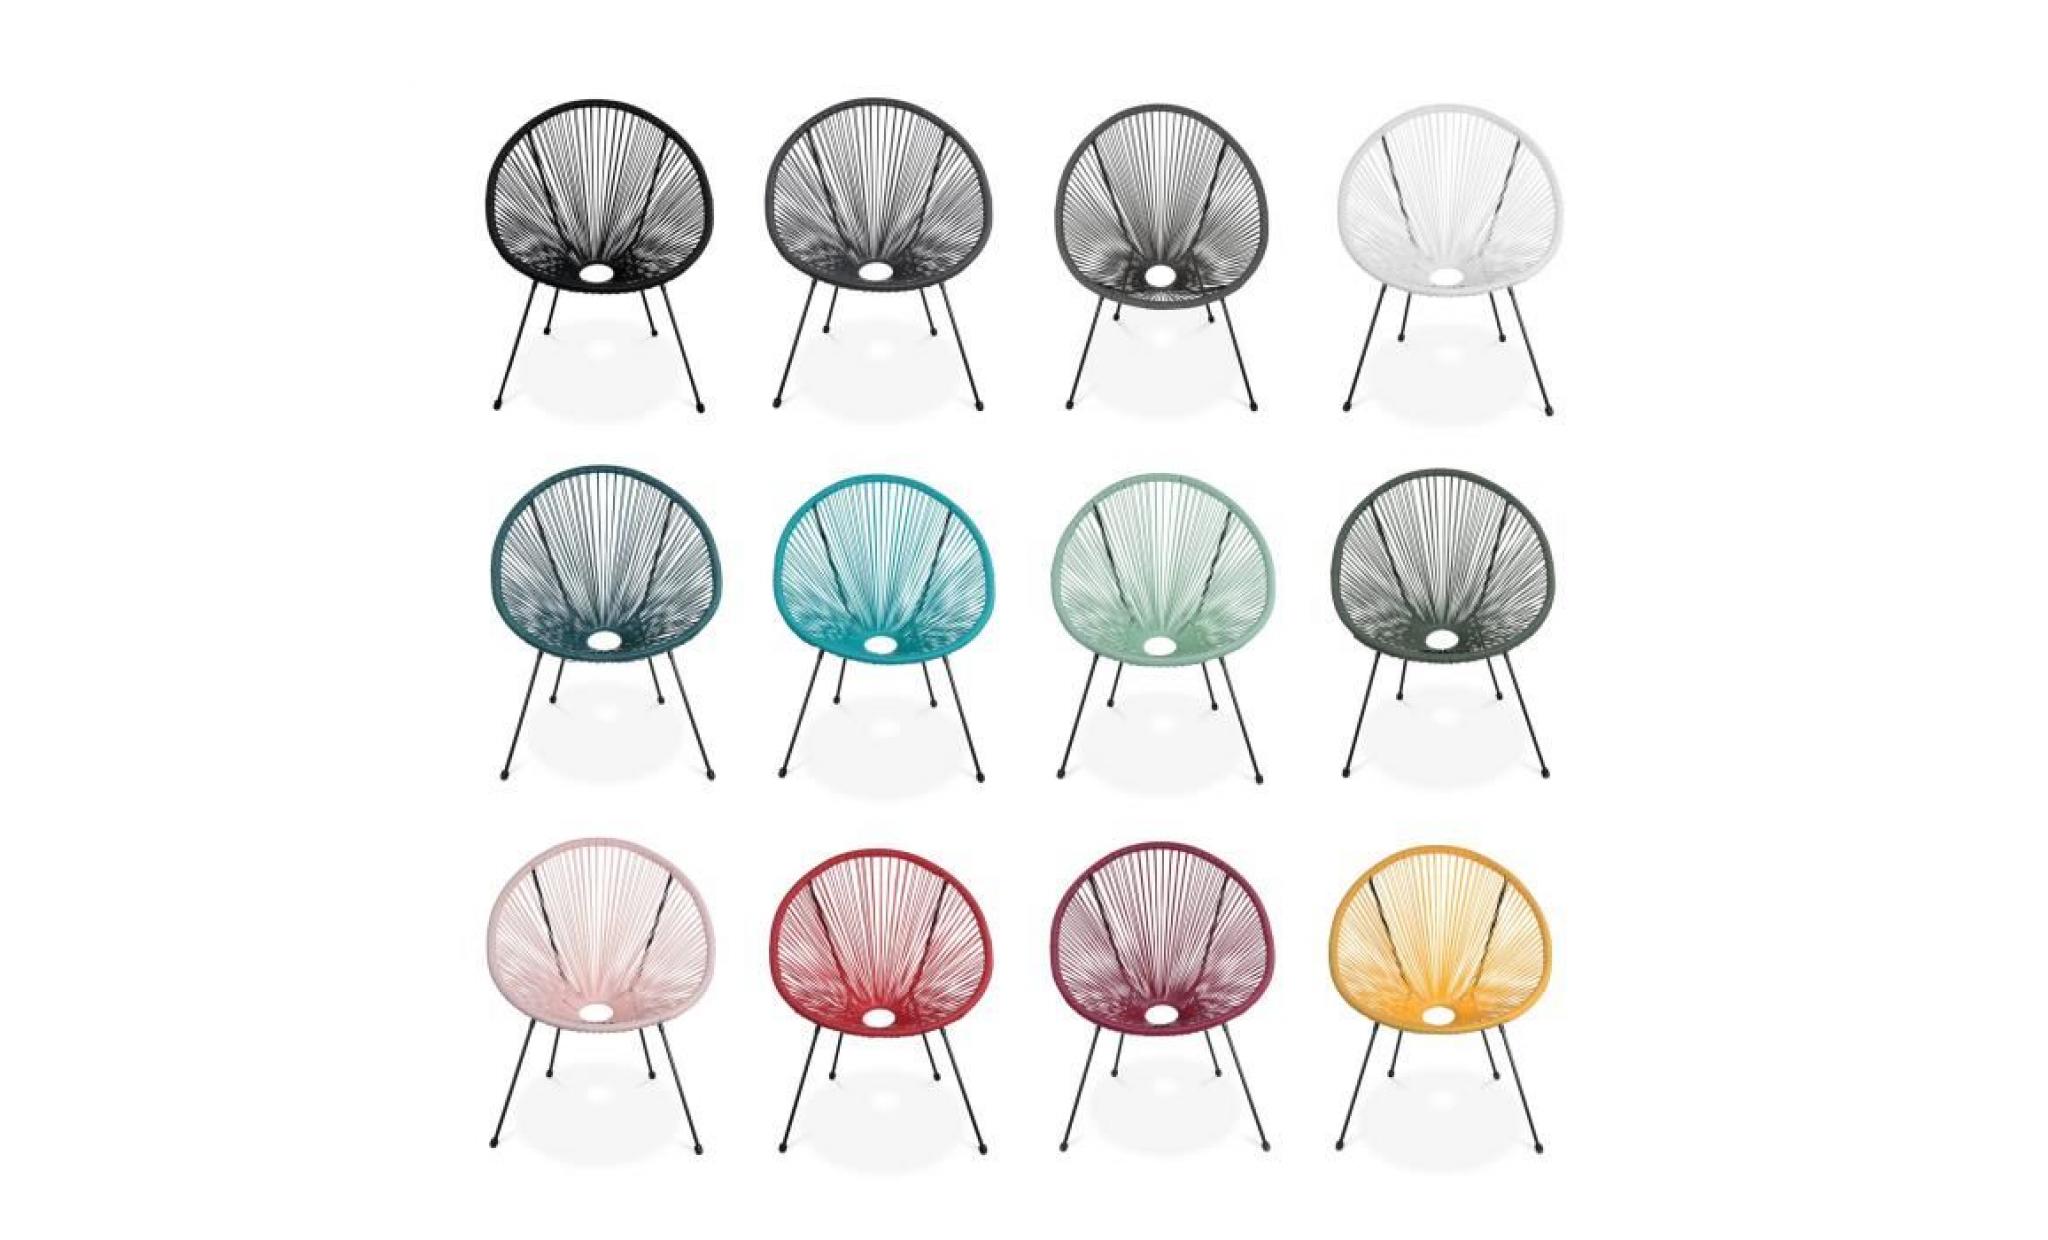 lot de 2 fauteuils design oeuf   acapulco turquoise   fauteuils 4 pieds design rétro, cordage plastique, intérieur / extérieur pas cher